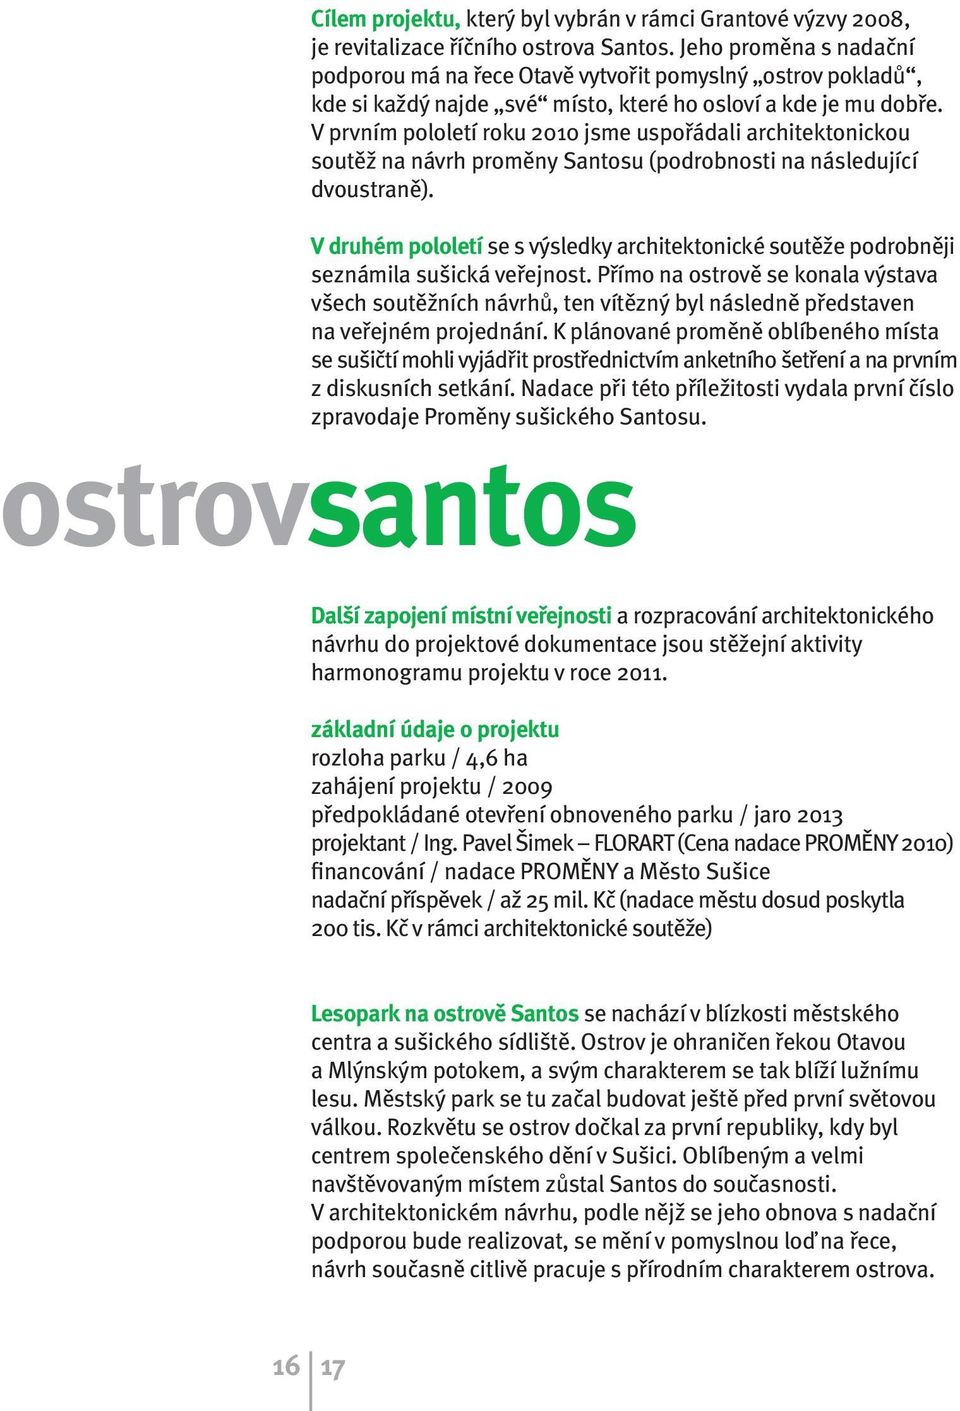 V prvním pololetí roku 2010 jsme uspořádali architektonickou soutěž na návrh proměny Santosu (podrobnosti na následující dvoustraně).